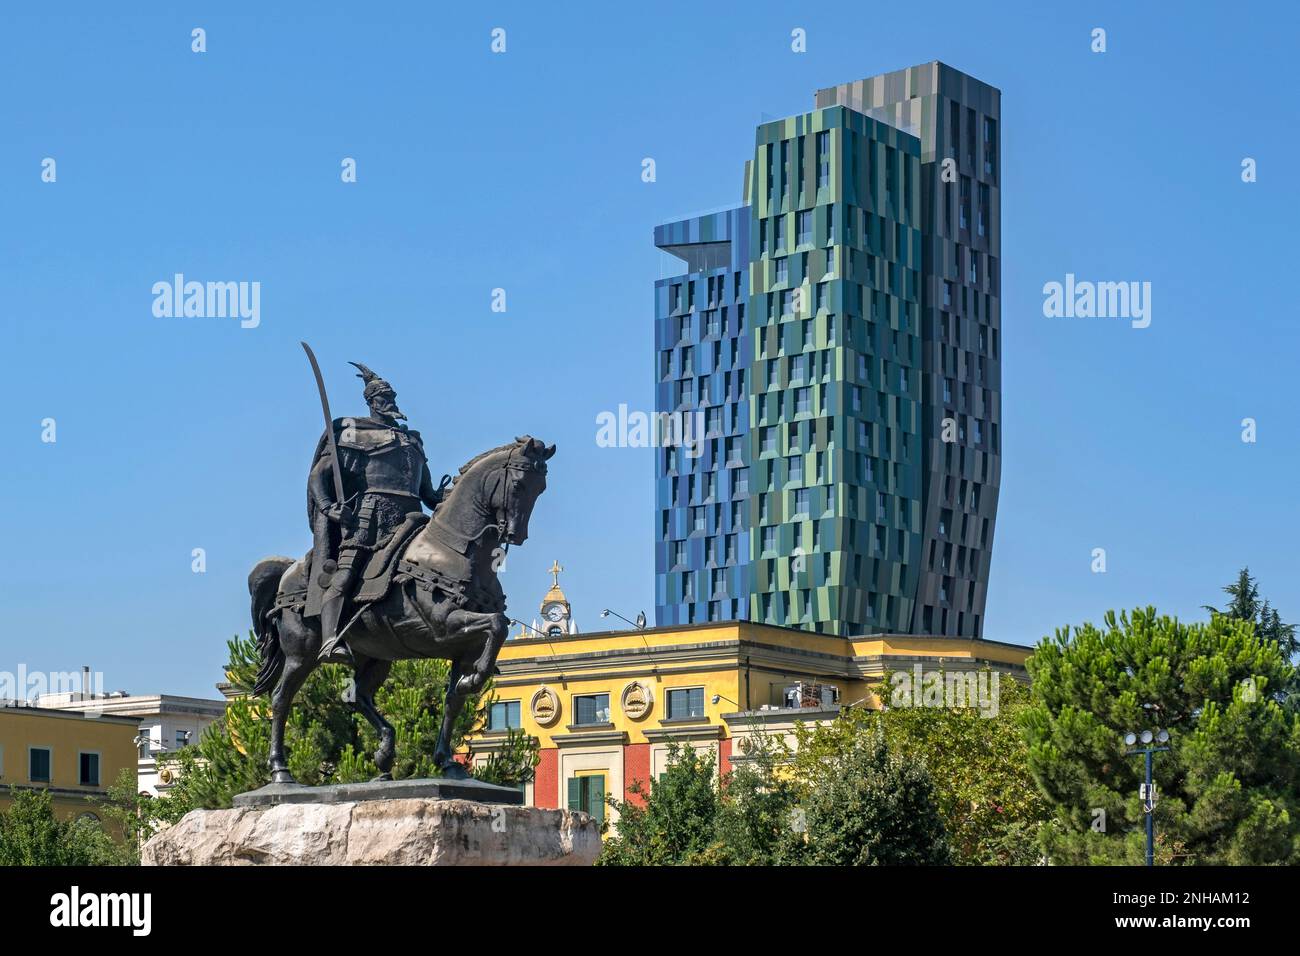 Torre Alban e Monumento Skanderbeg, statua equestre che commemora l'eroe nazionale albanese per aver resistito agli Ottomani, capitale Tirana, Albania Foto Stock